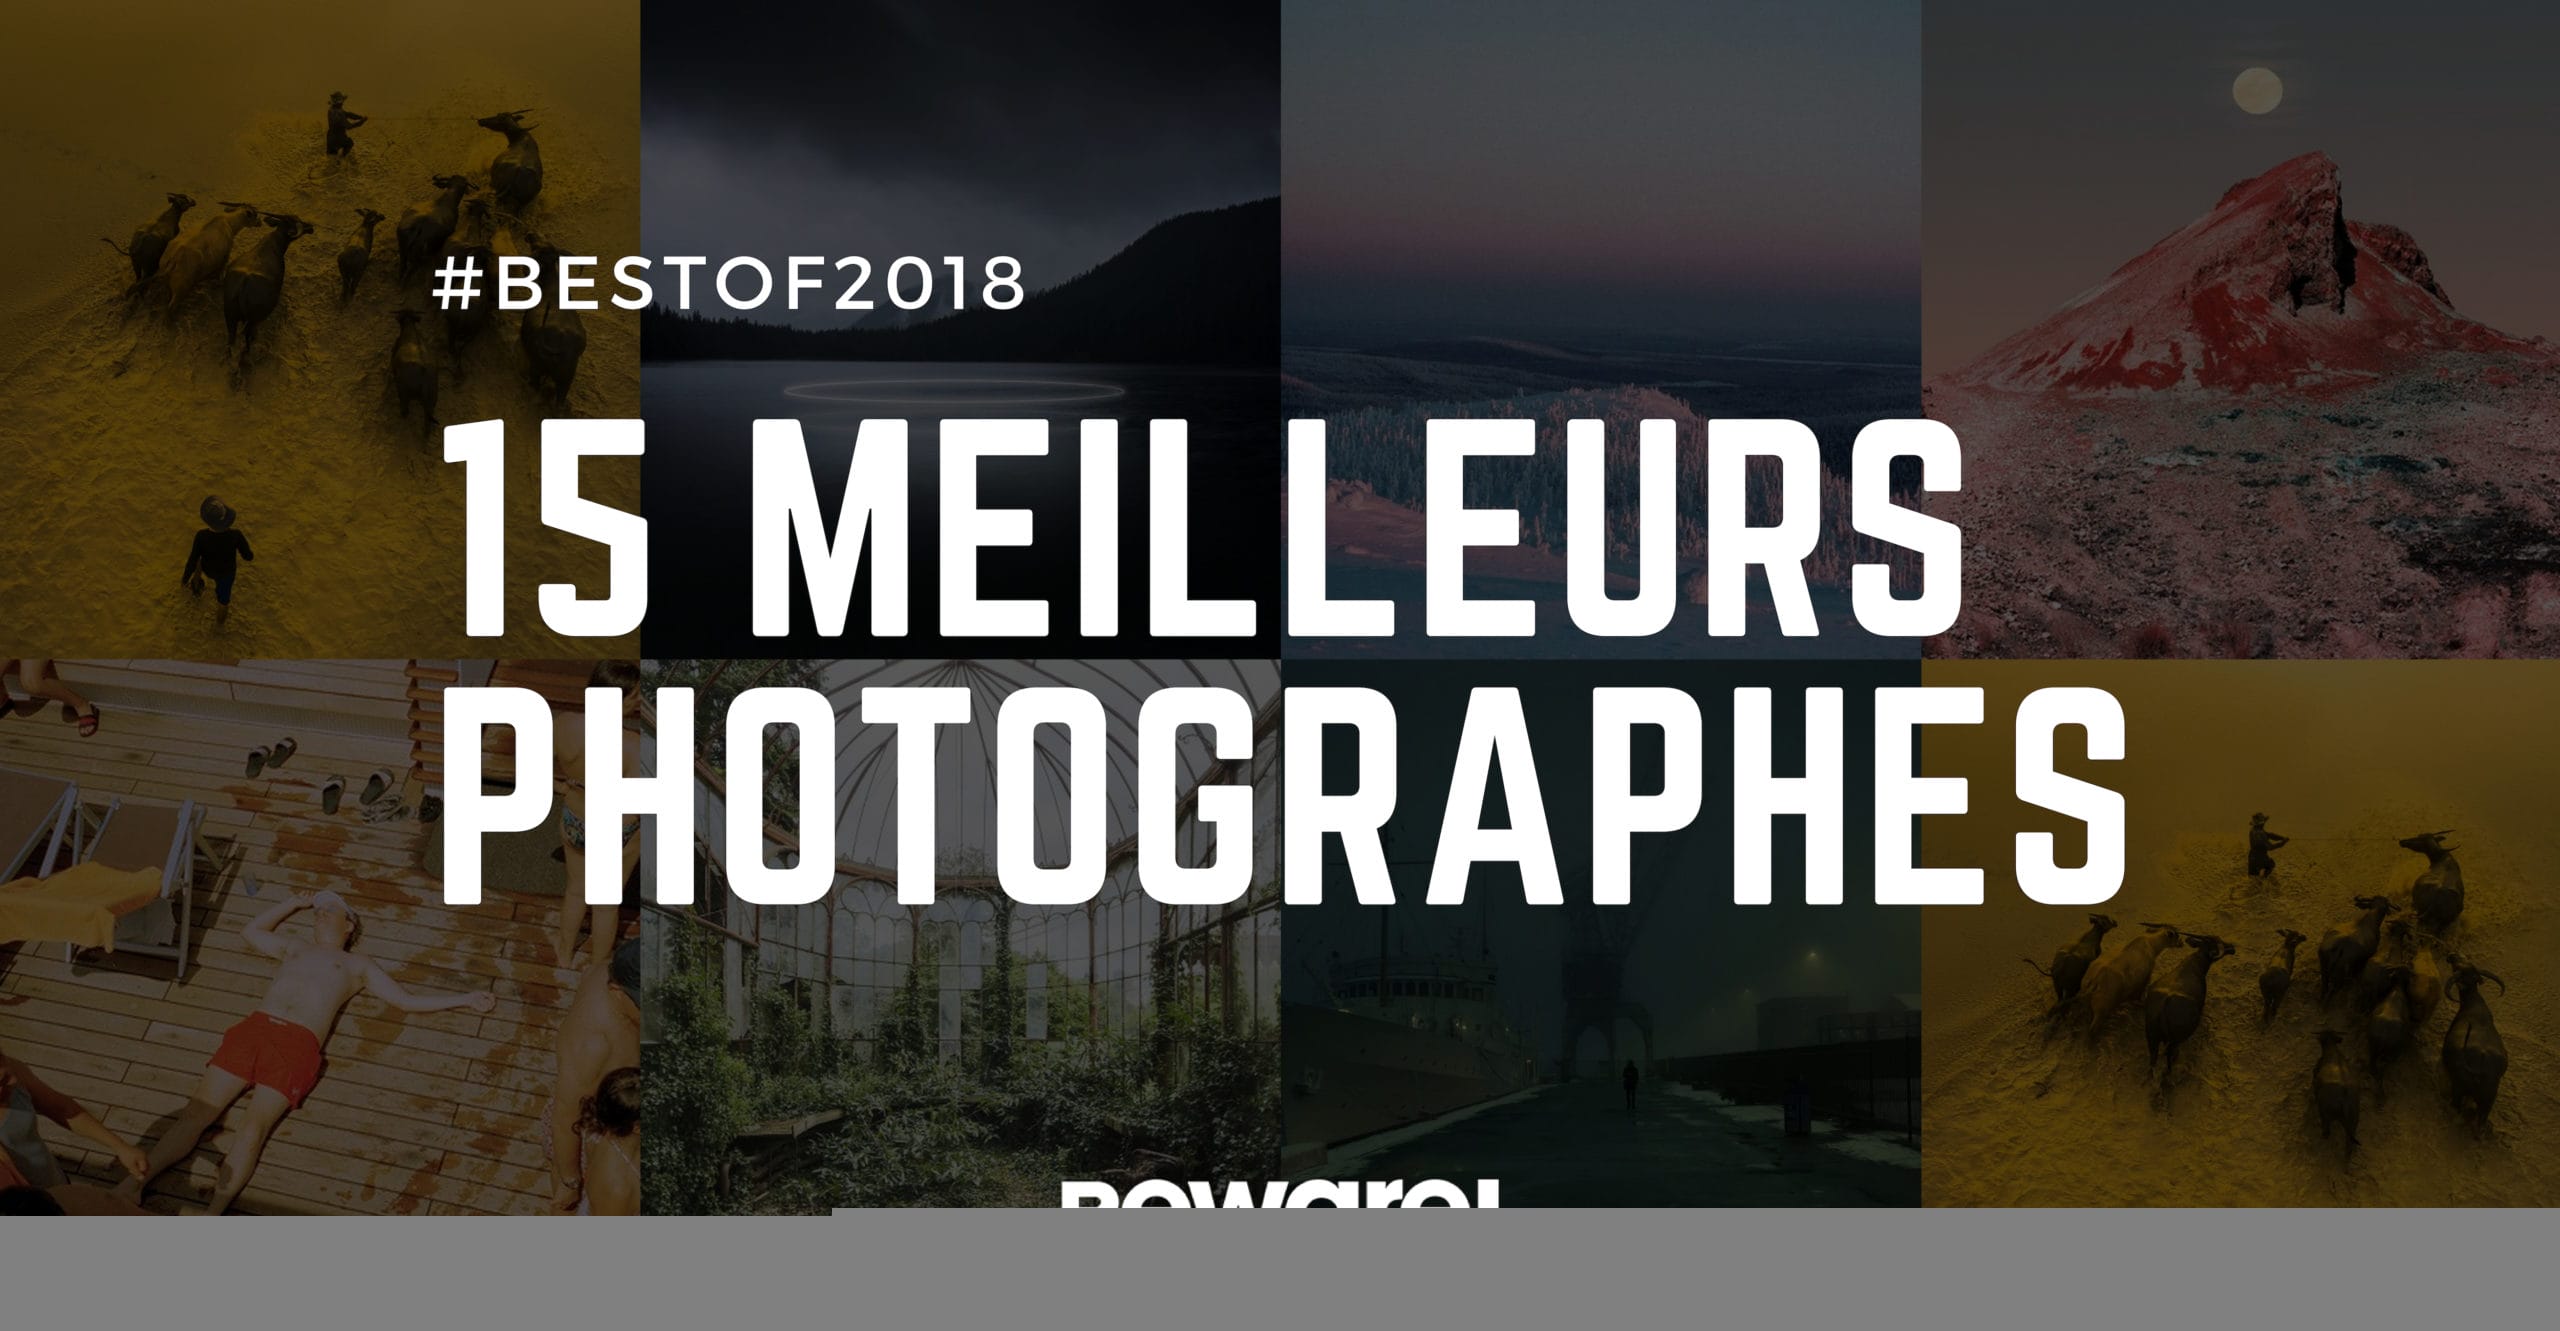 Les 15 meilleurs photographes de 2018 2